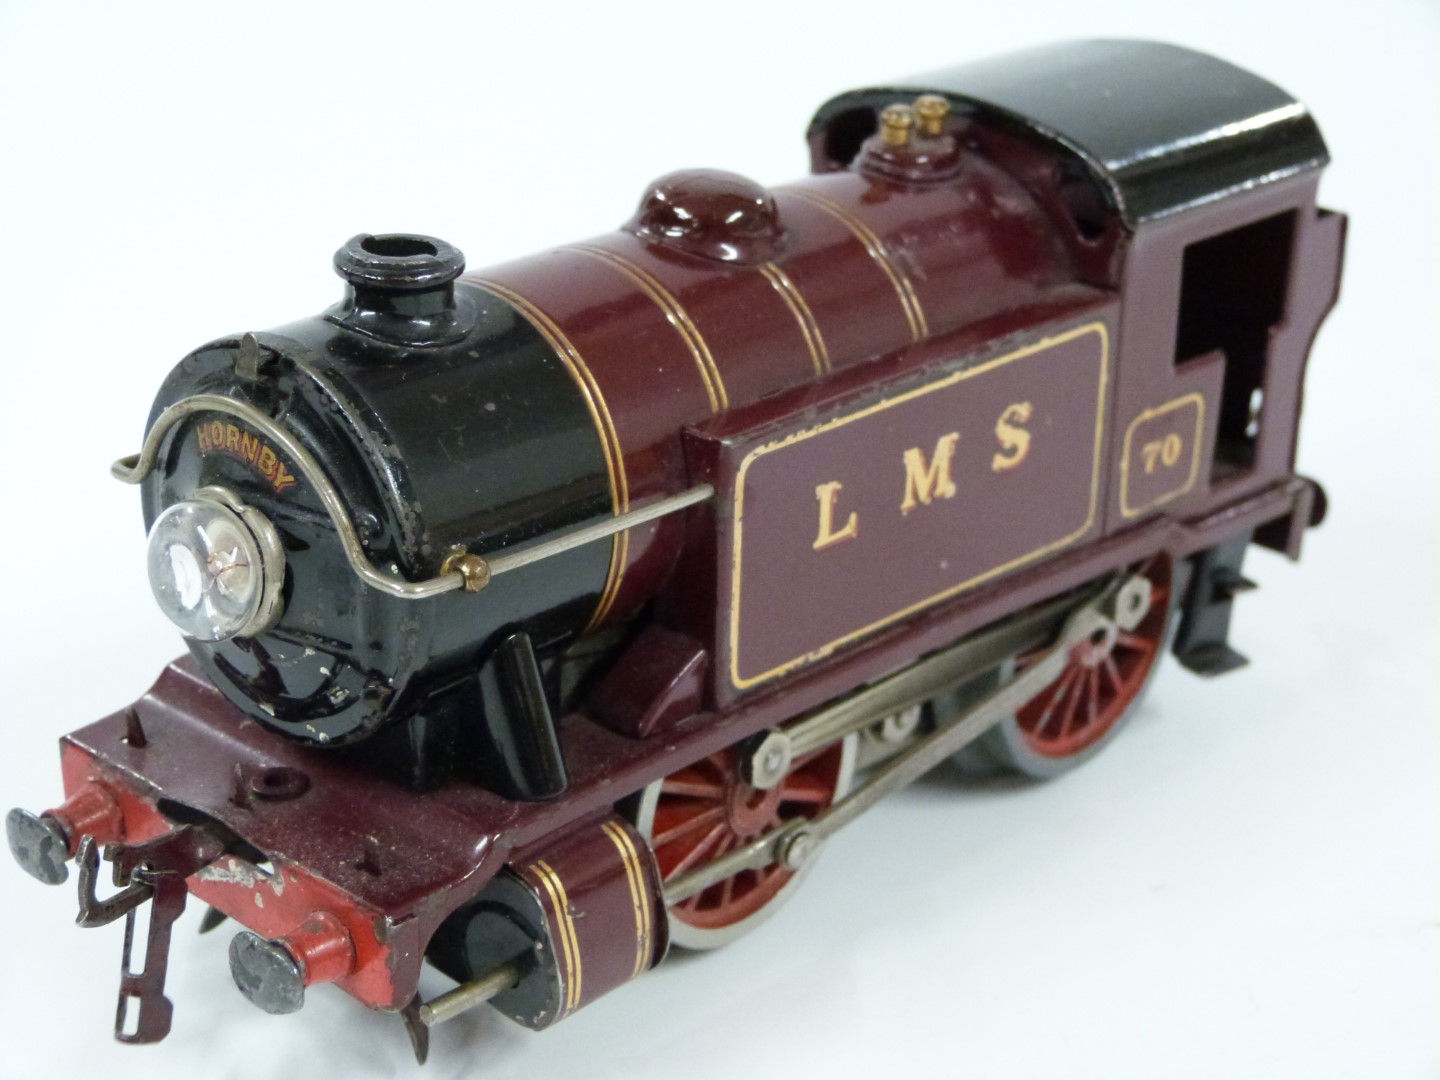 Hornby 0 gauge 20v electric LMS 0-4-0 tank locomotive, 70. - Image 4 of 5